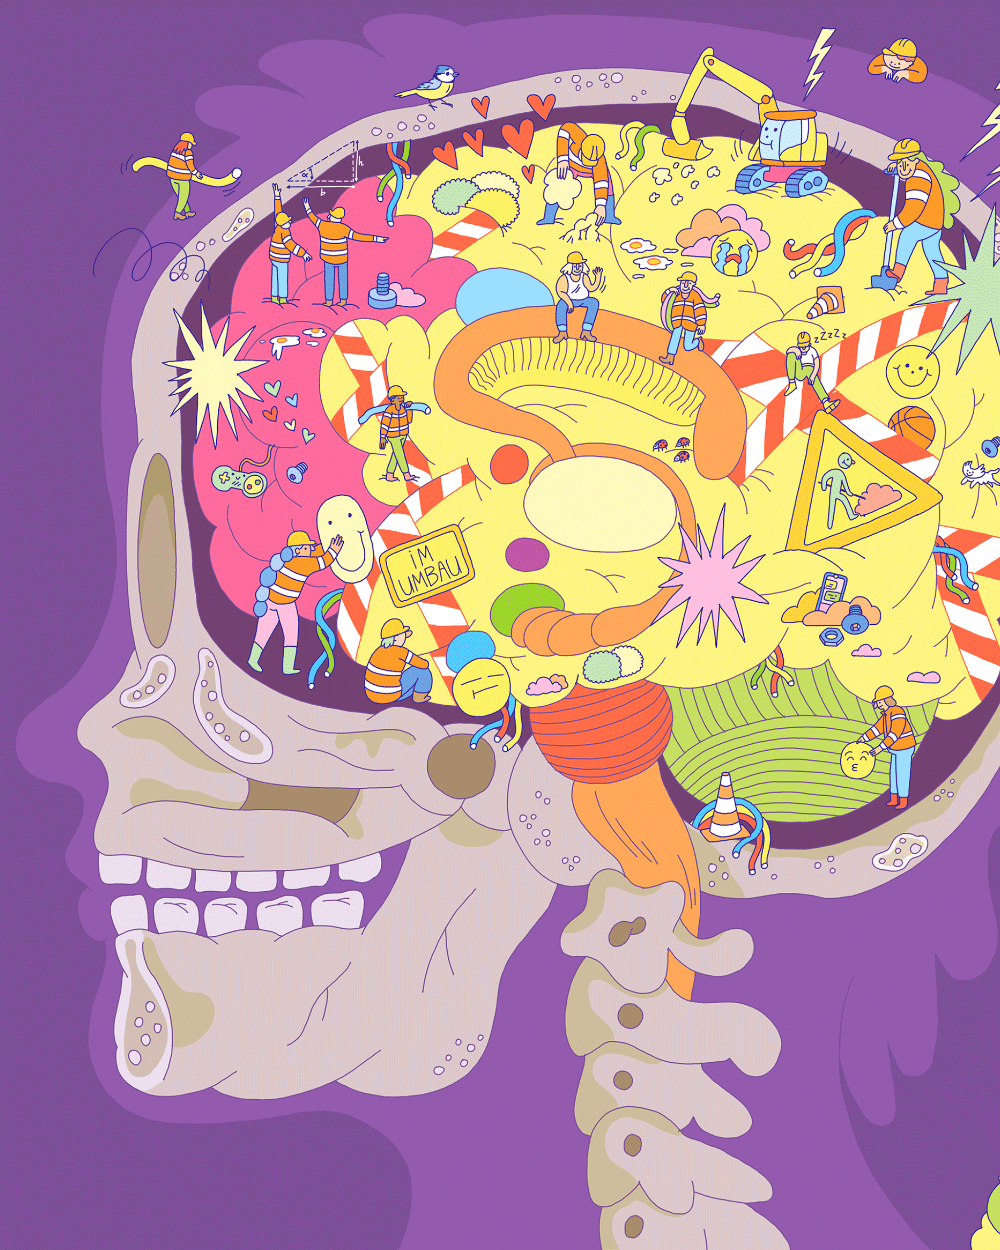 Editorial Illustration von Mirko Röper zum Thema Gehirnentwicklung in der Pubertät. Erschienen ist diese Illustration in DeinSPIEGEL